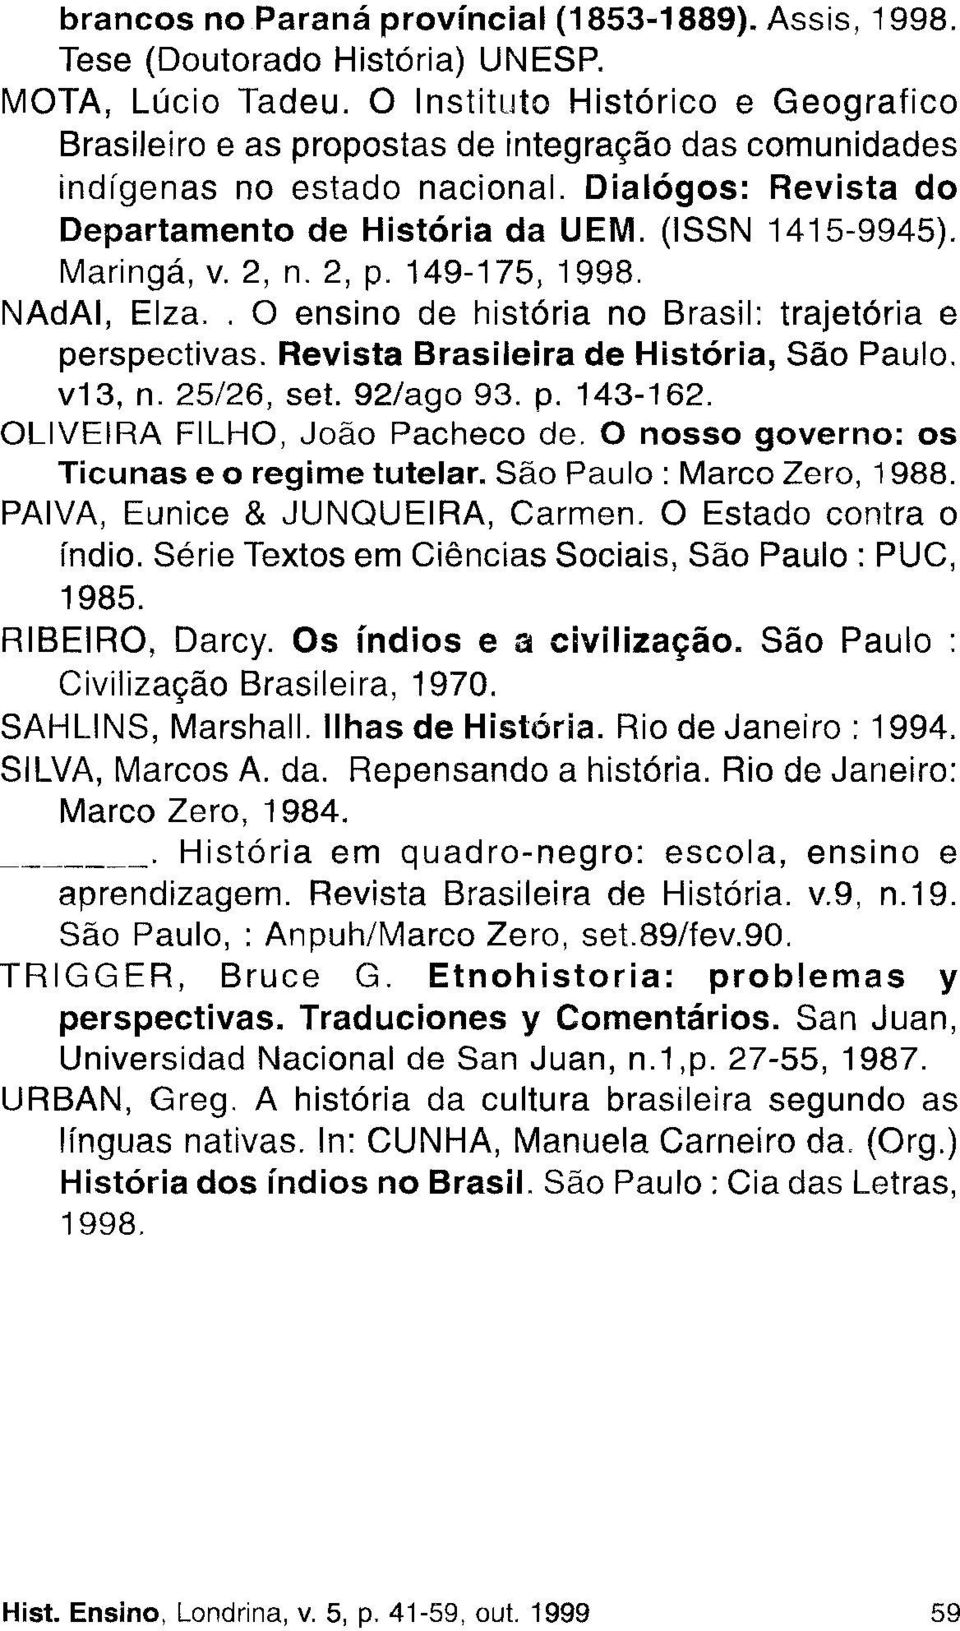 Maringá, v. 2, n. 2, p.149-175, 1998. NAdAI, Elza.. ensino de história no Brasil: trajetória e perspectivas. Revista Brasileira de História, São Paulo. v13, n. 25/26, set. 92/ago 93. p. 143-162.